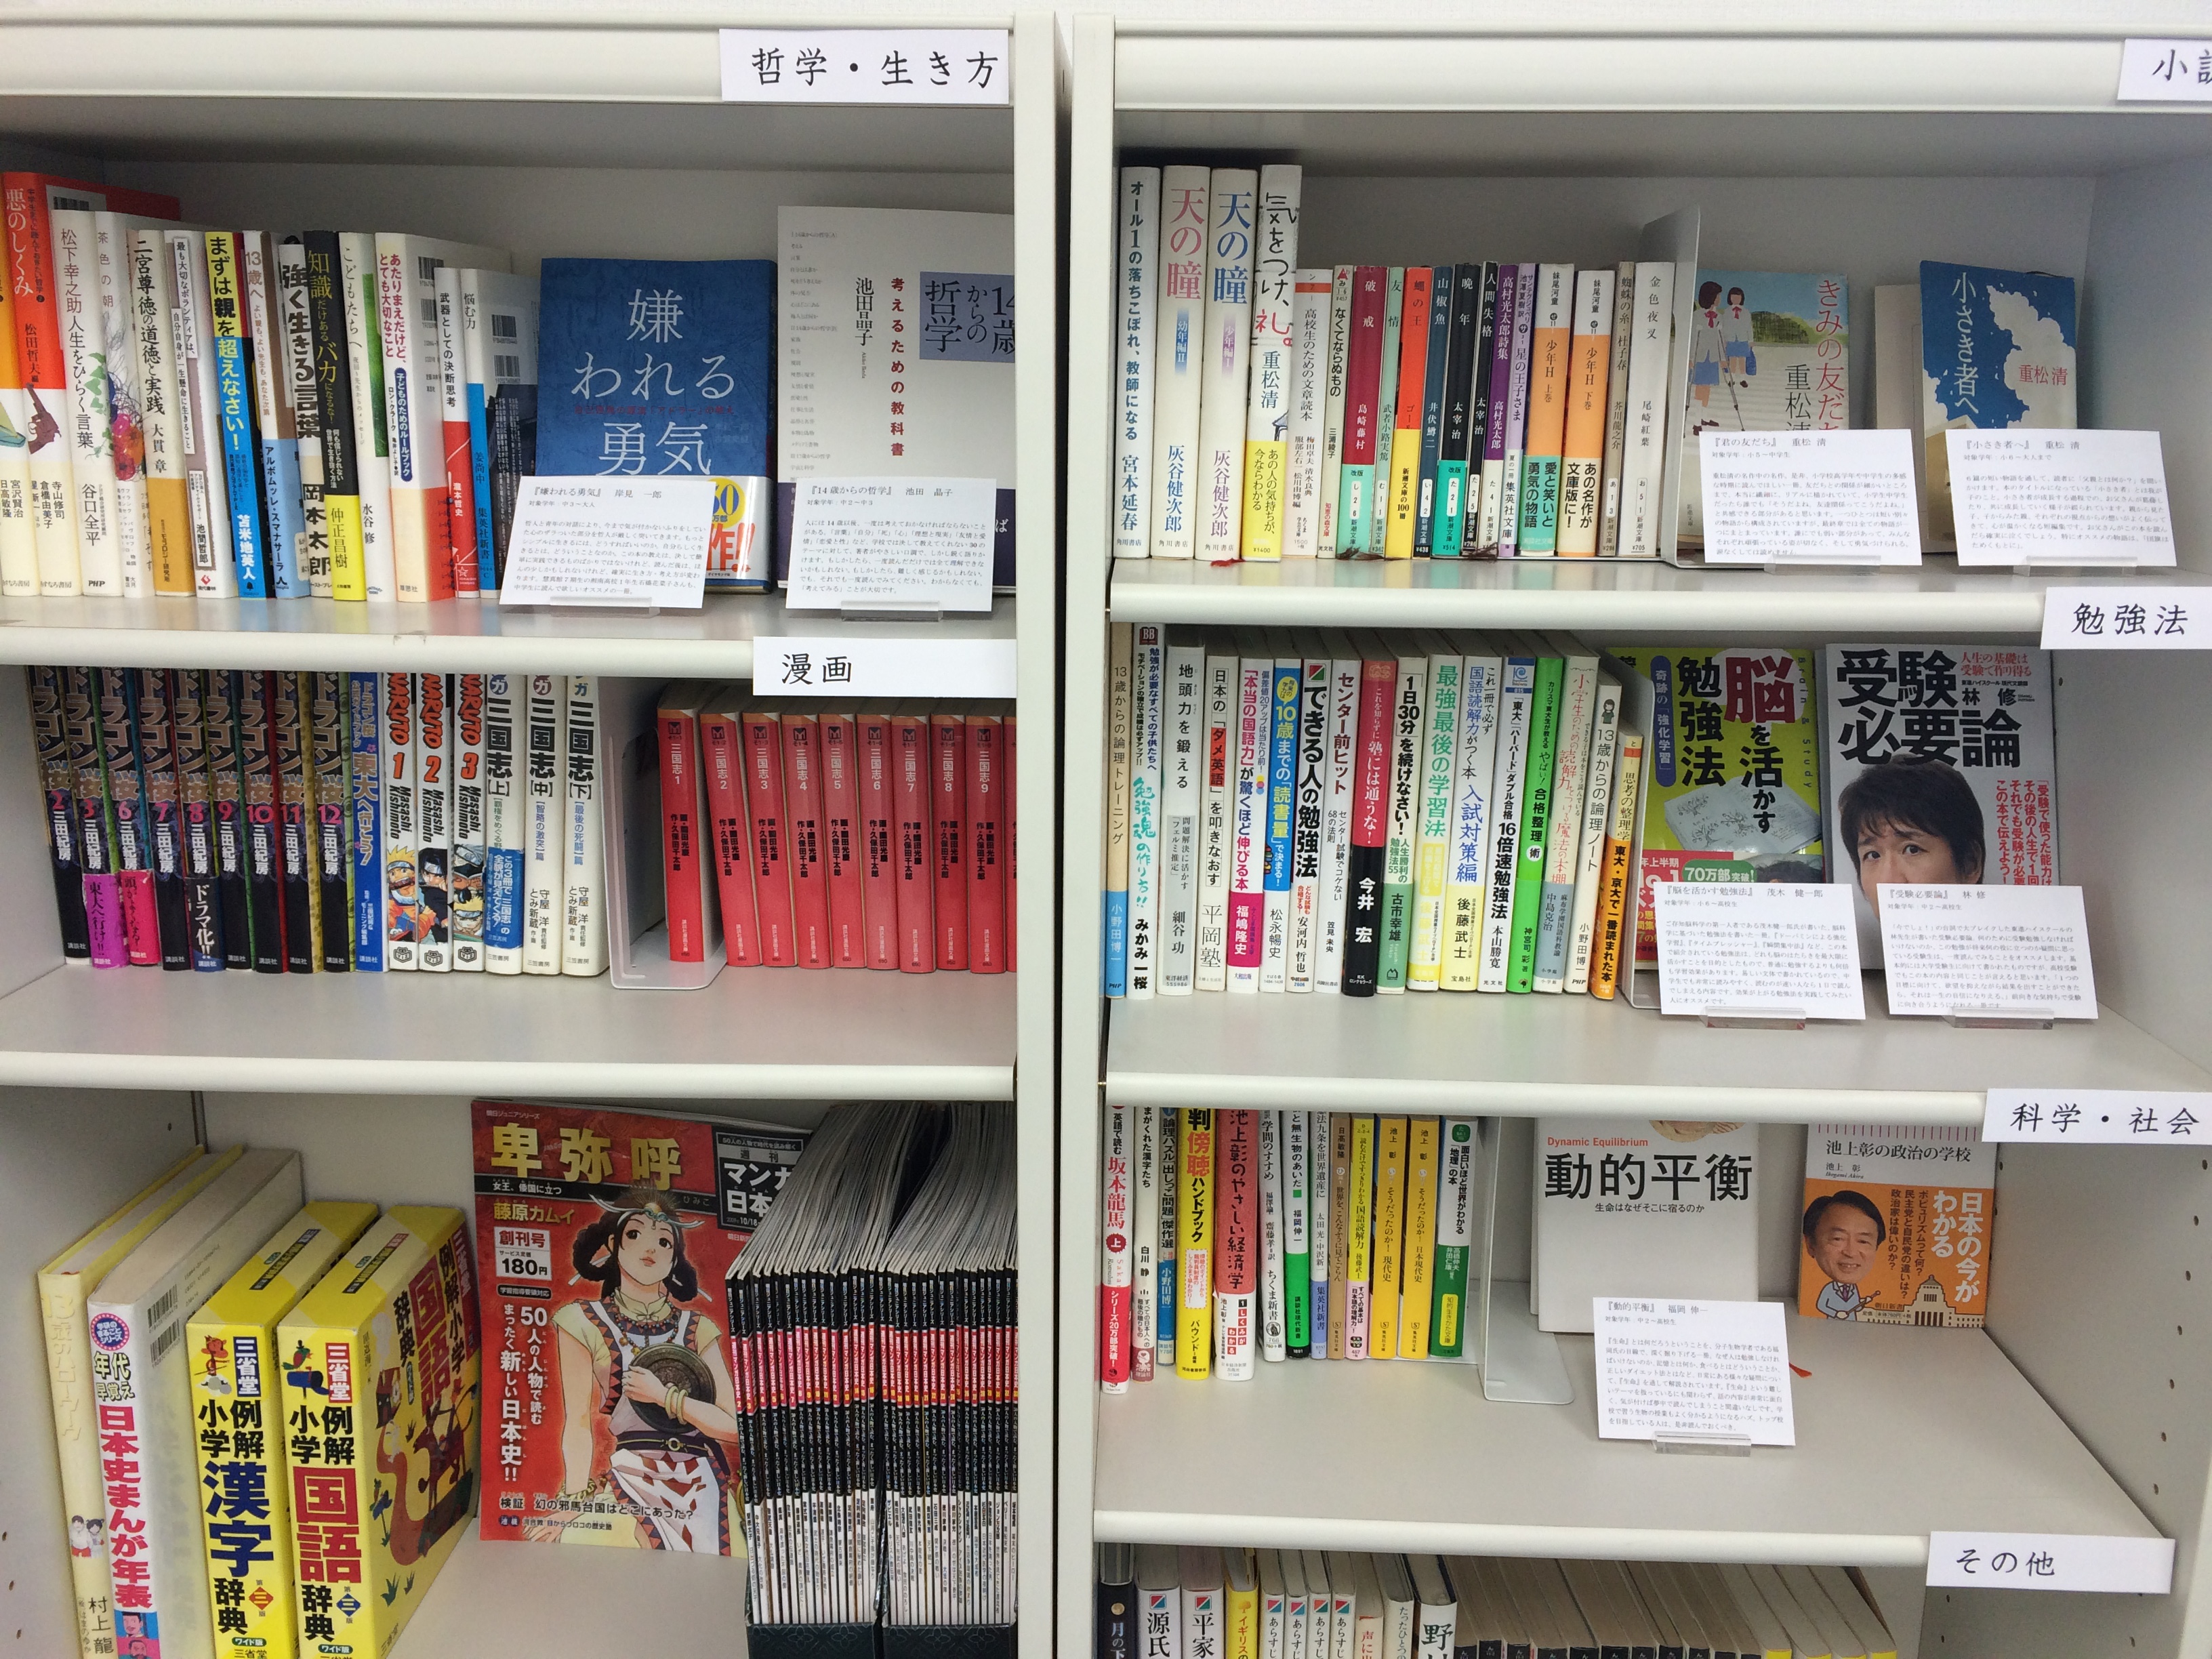 塾の文庫コーナーを充実させる計画が進行中。＋国語力アップに効果的な読書の方法など。